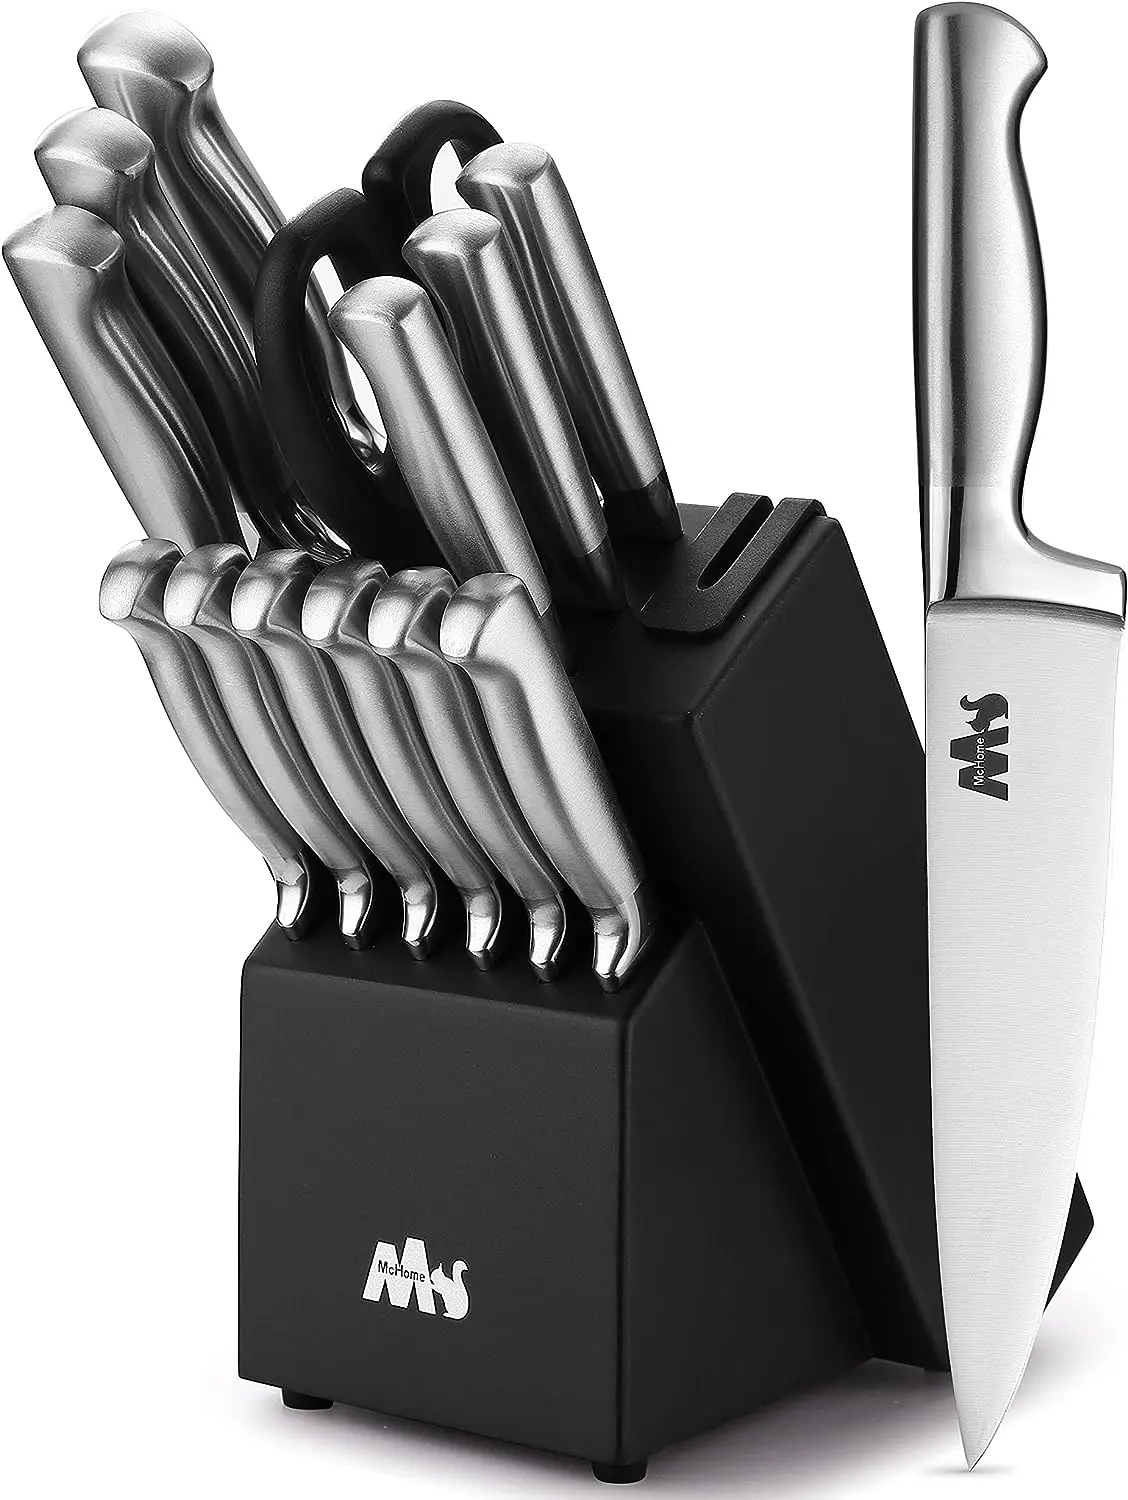 

Наборы ножей, 15 шт. немецких кухонных ножей из нержавеющей стали, набор блоков со встроенной точилкой